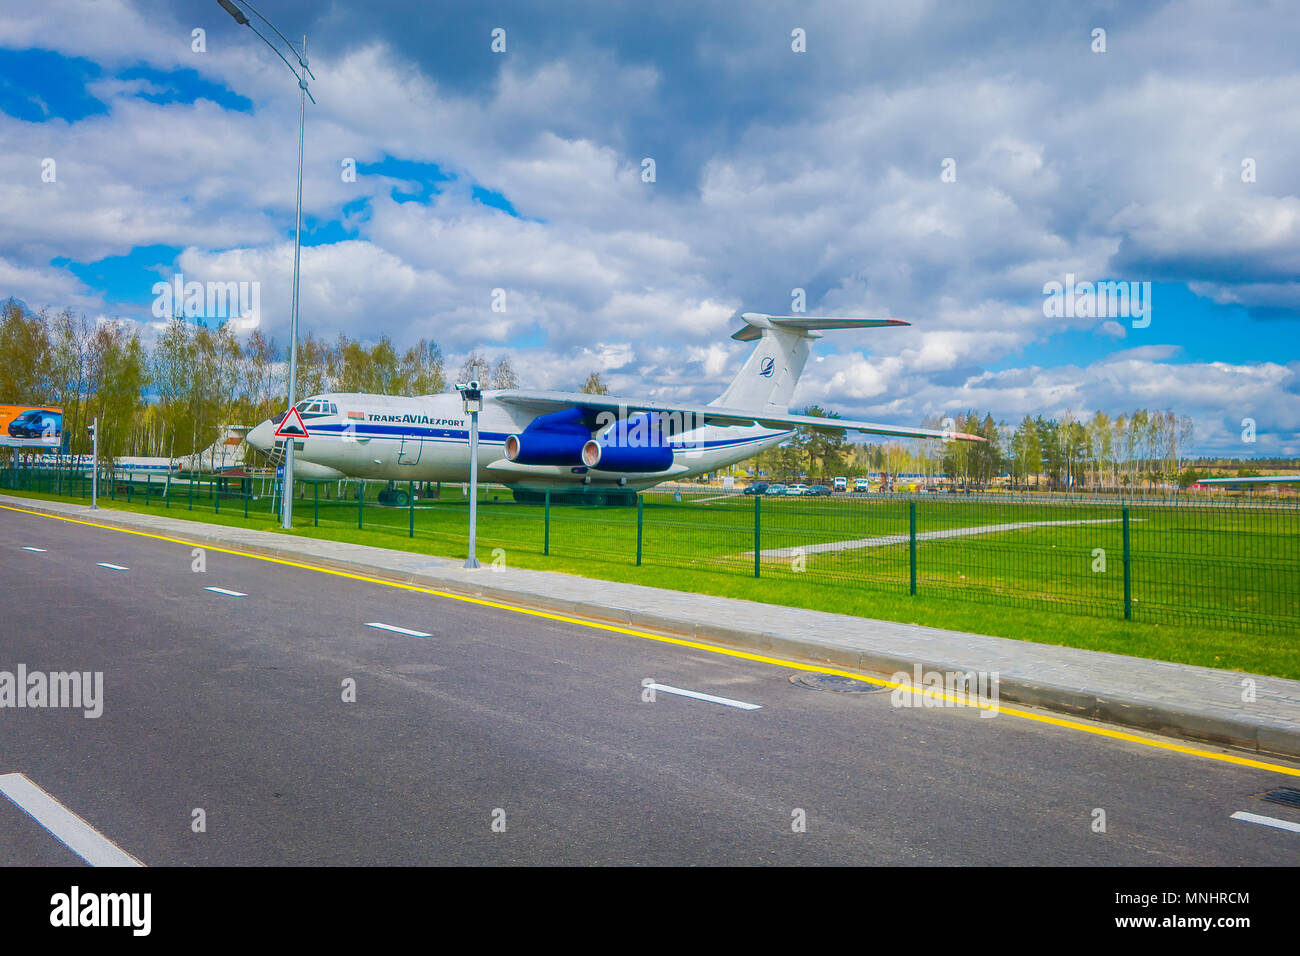 MINSK, Weißrussland - Mai 01, 2018: Air Museum der alten zivile Luftfahrt geben Sie bei der der Flughafen Minsk öffnen. Die Tupolew Tu-134 ist ein 3-Motor airliner in der Sowjetunion gebaut Stockfoto